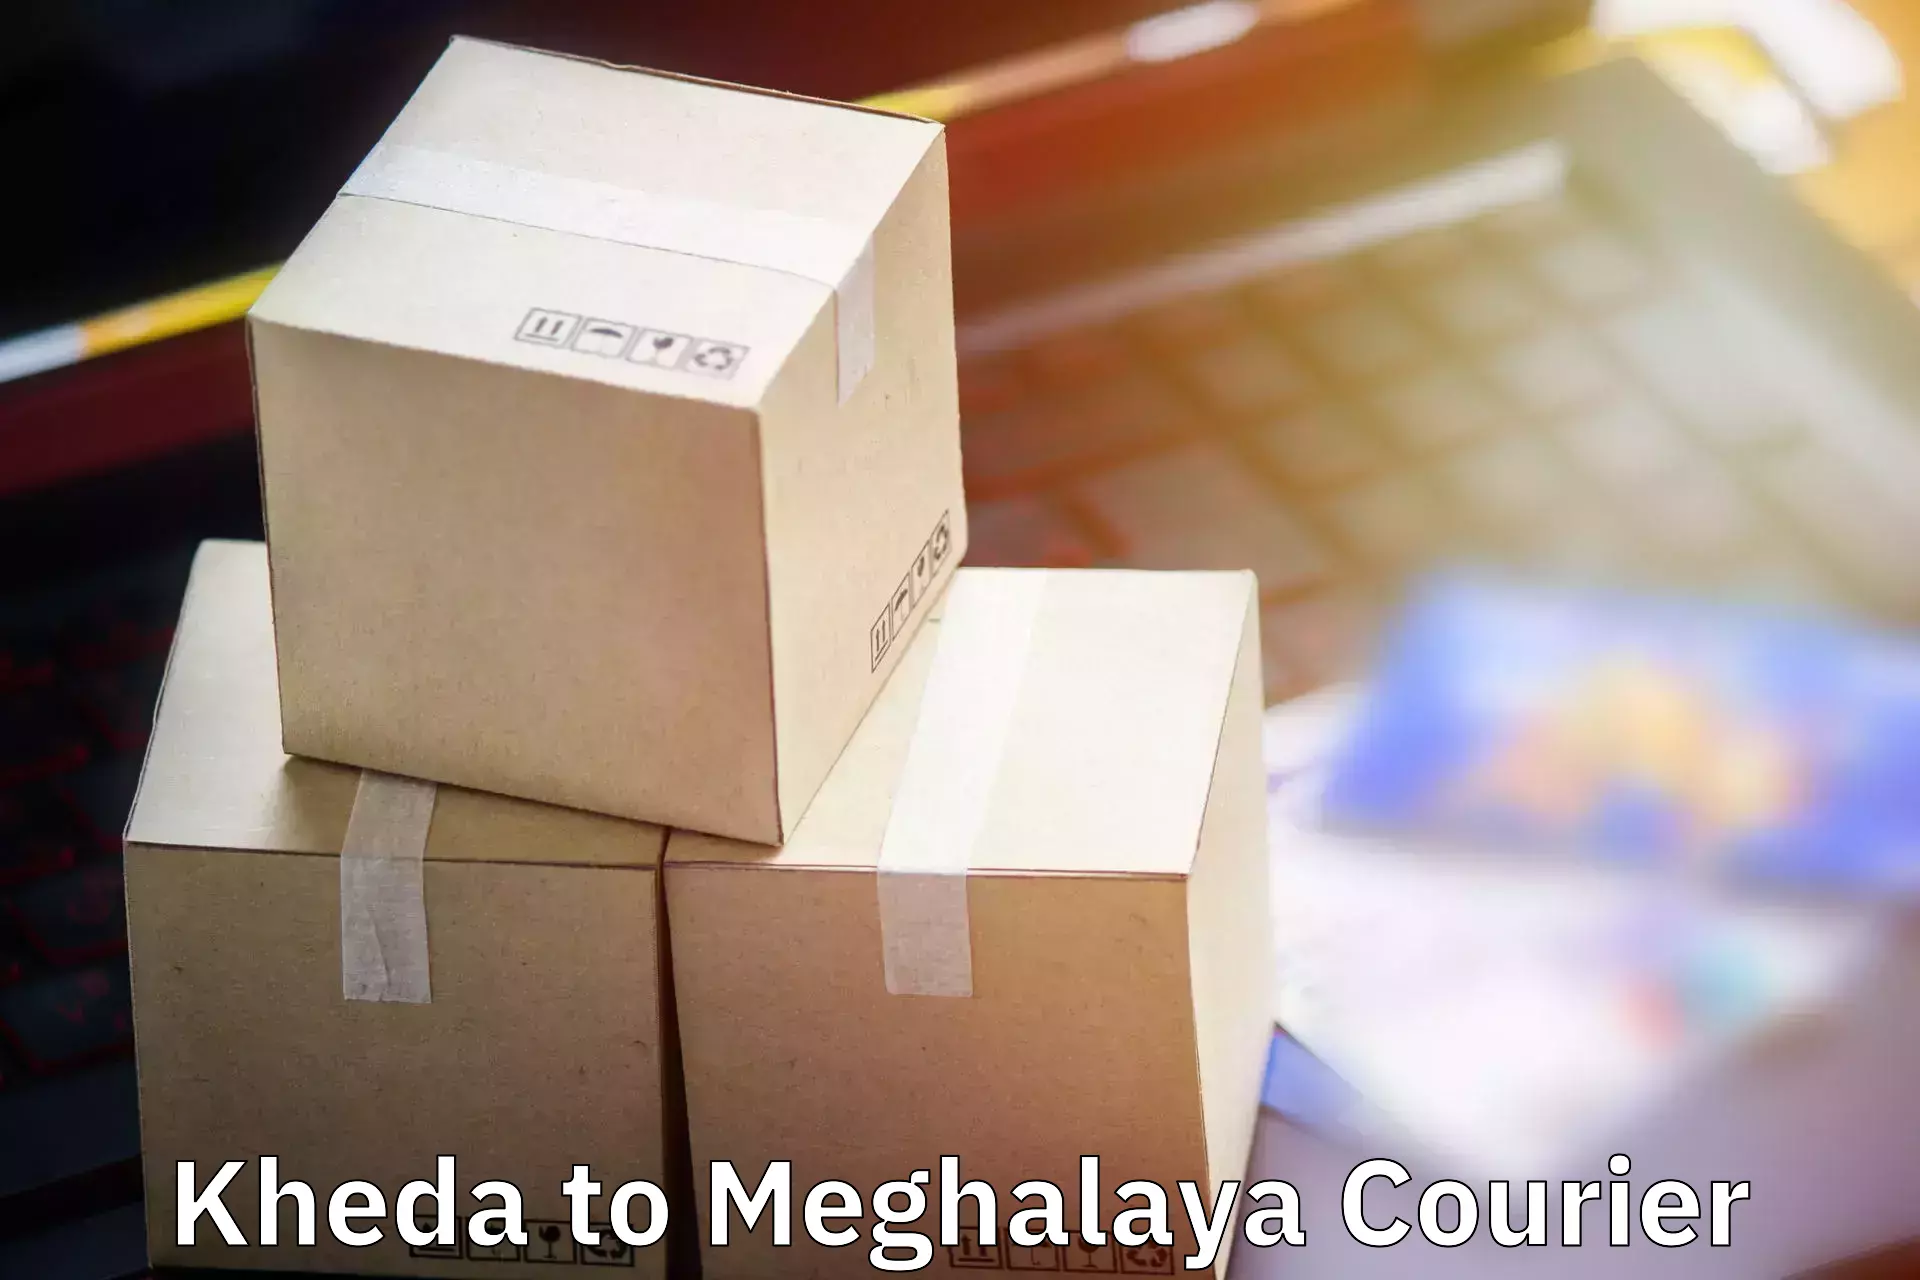 Luggage delivery app Kheda to Meghalaya